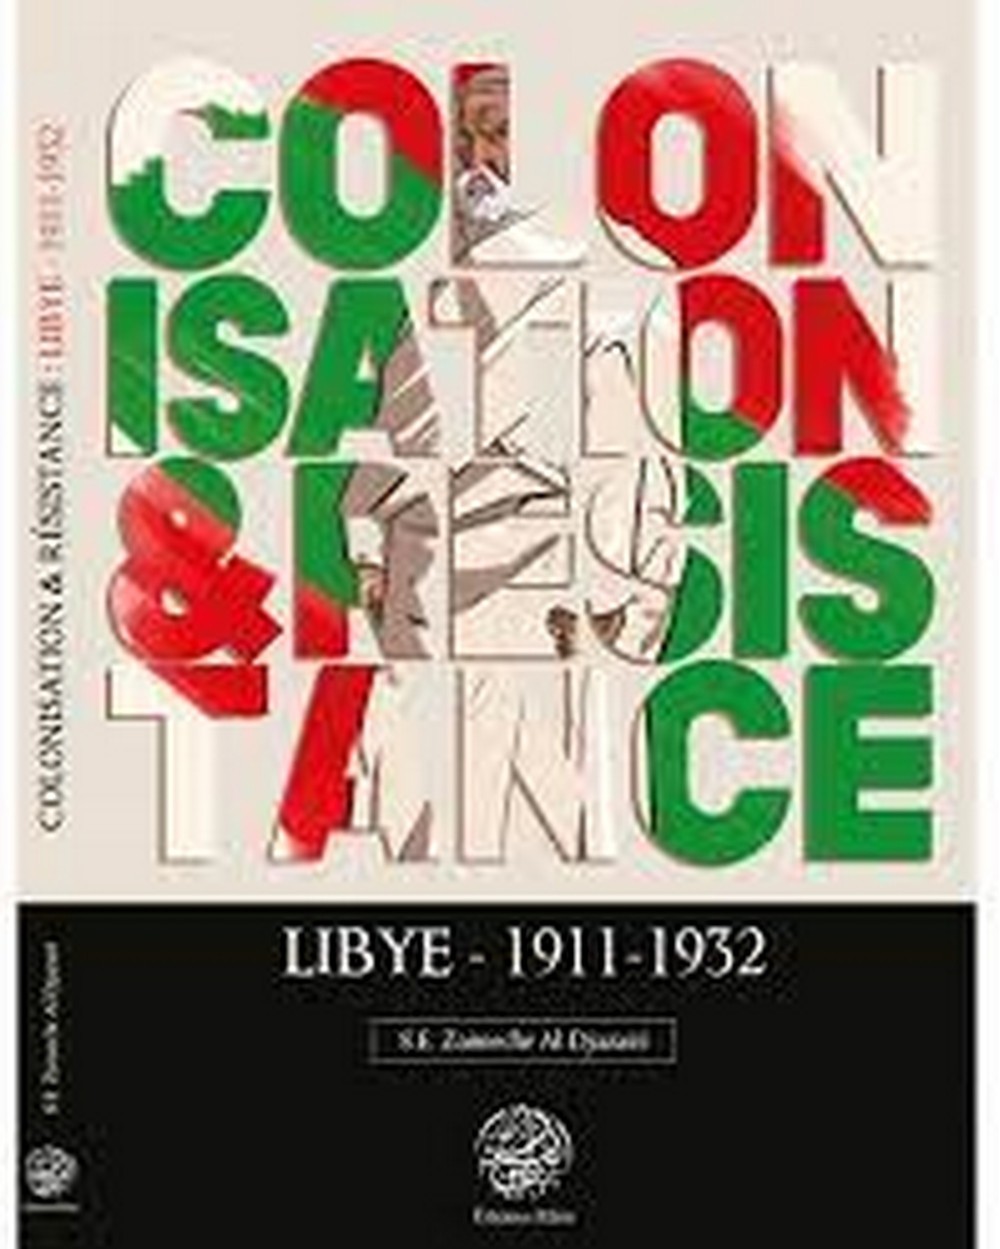 Colonization & Resistance: Libya 1911-1932